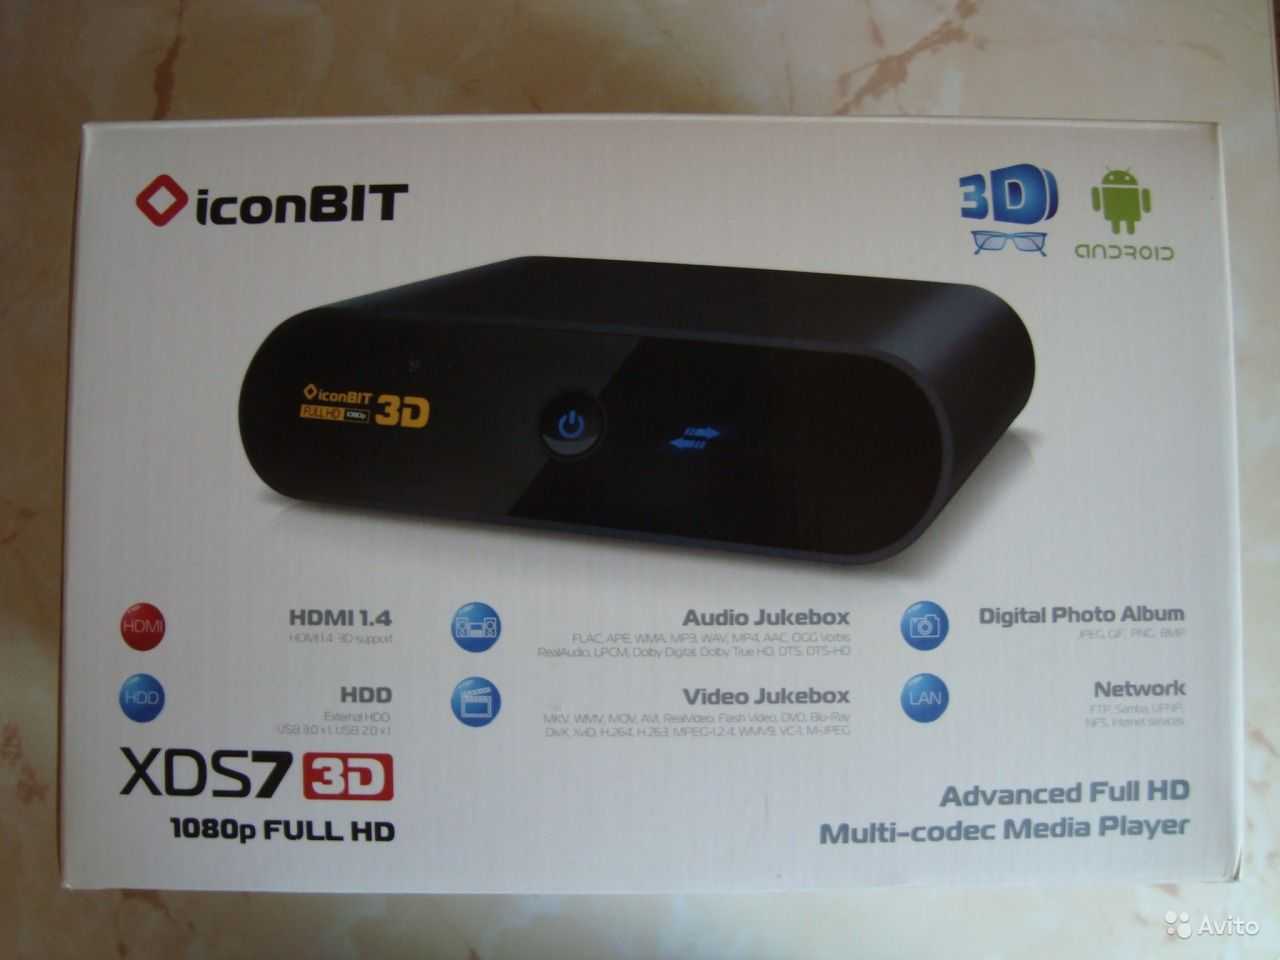 Iconbit xds73d - купить , скидки, цена, отзывы, обзор, характеристики - hd плееры